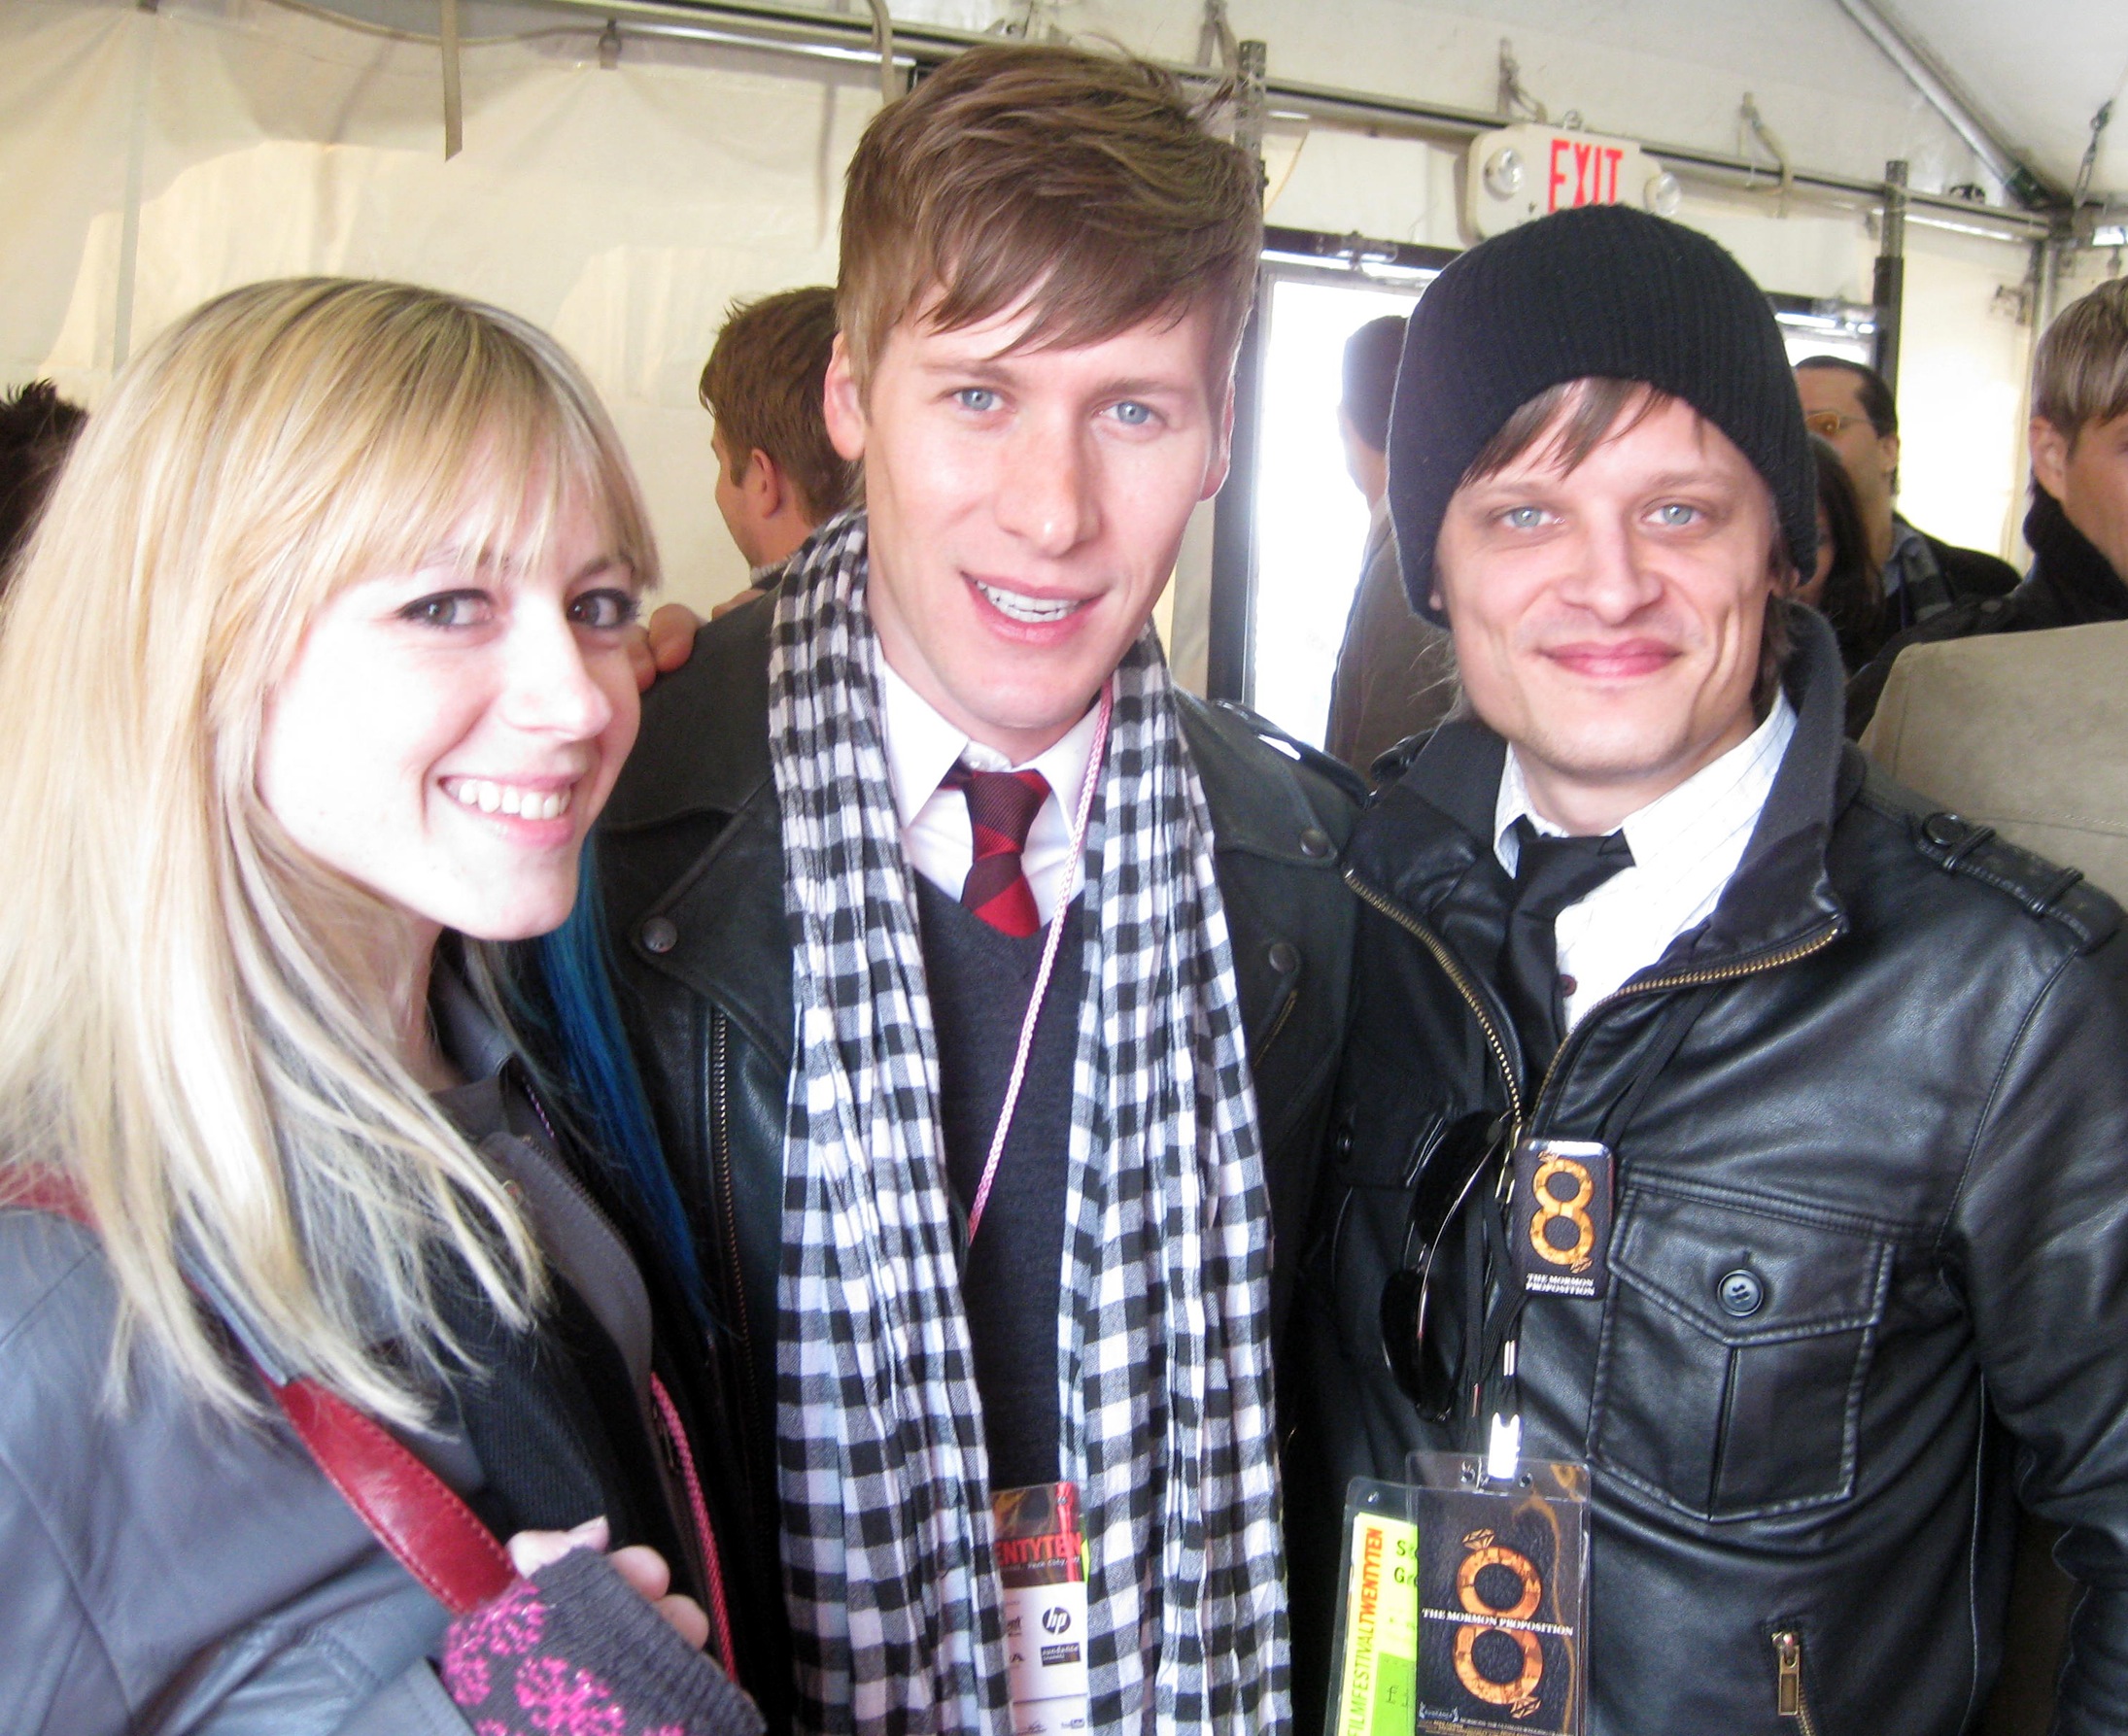 Emily Biondi, Dustin Lance Black, and Steven Greenstreet at the 2010 Sundance Film Festival.